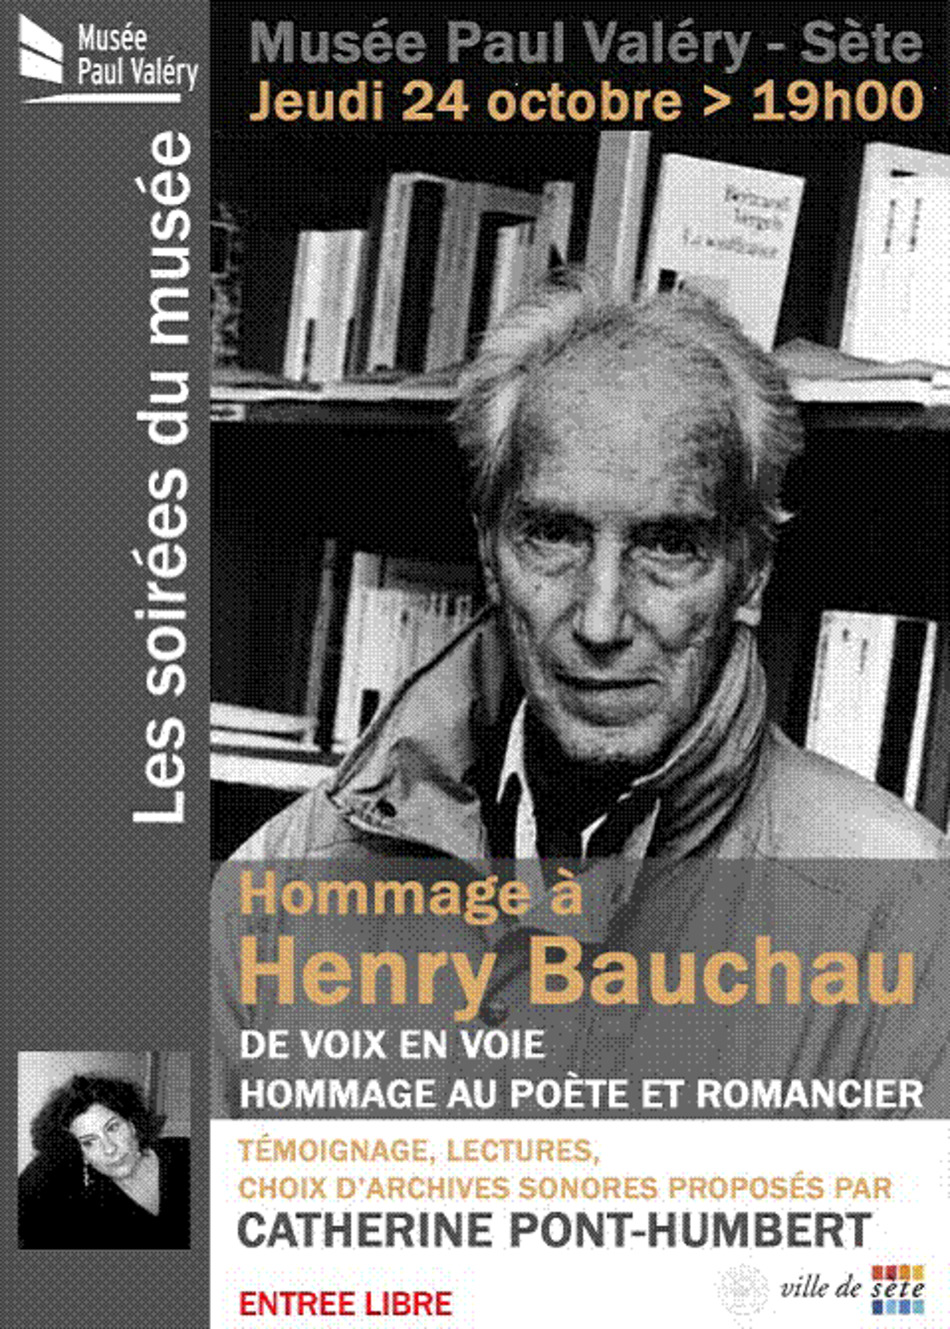 [agenda] Hommage à Henry Bauchau, Sète, le 24 ocotbre 2013 | Poezibao | Scoop.it